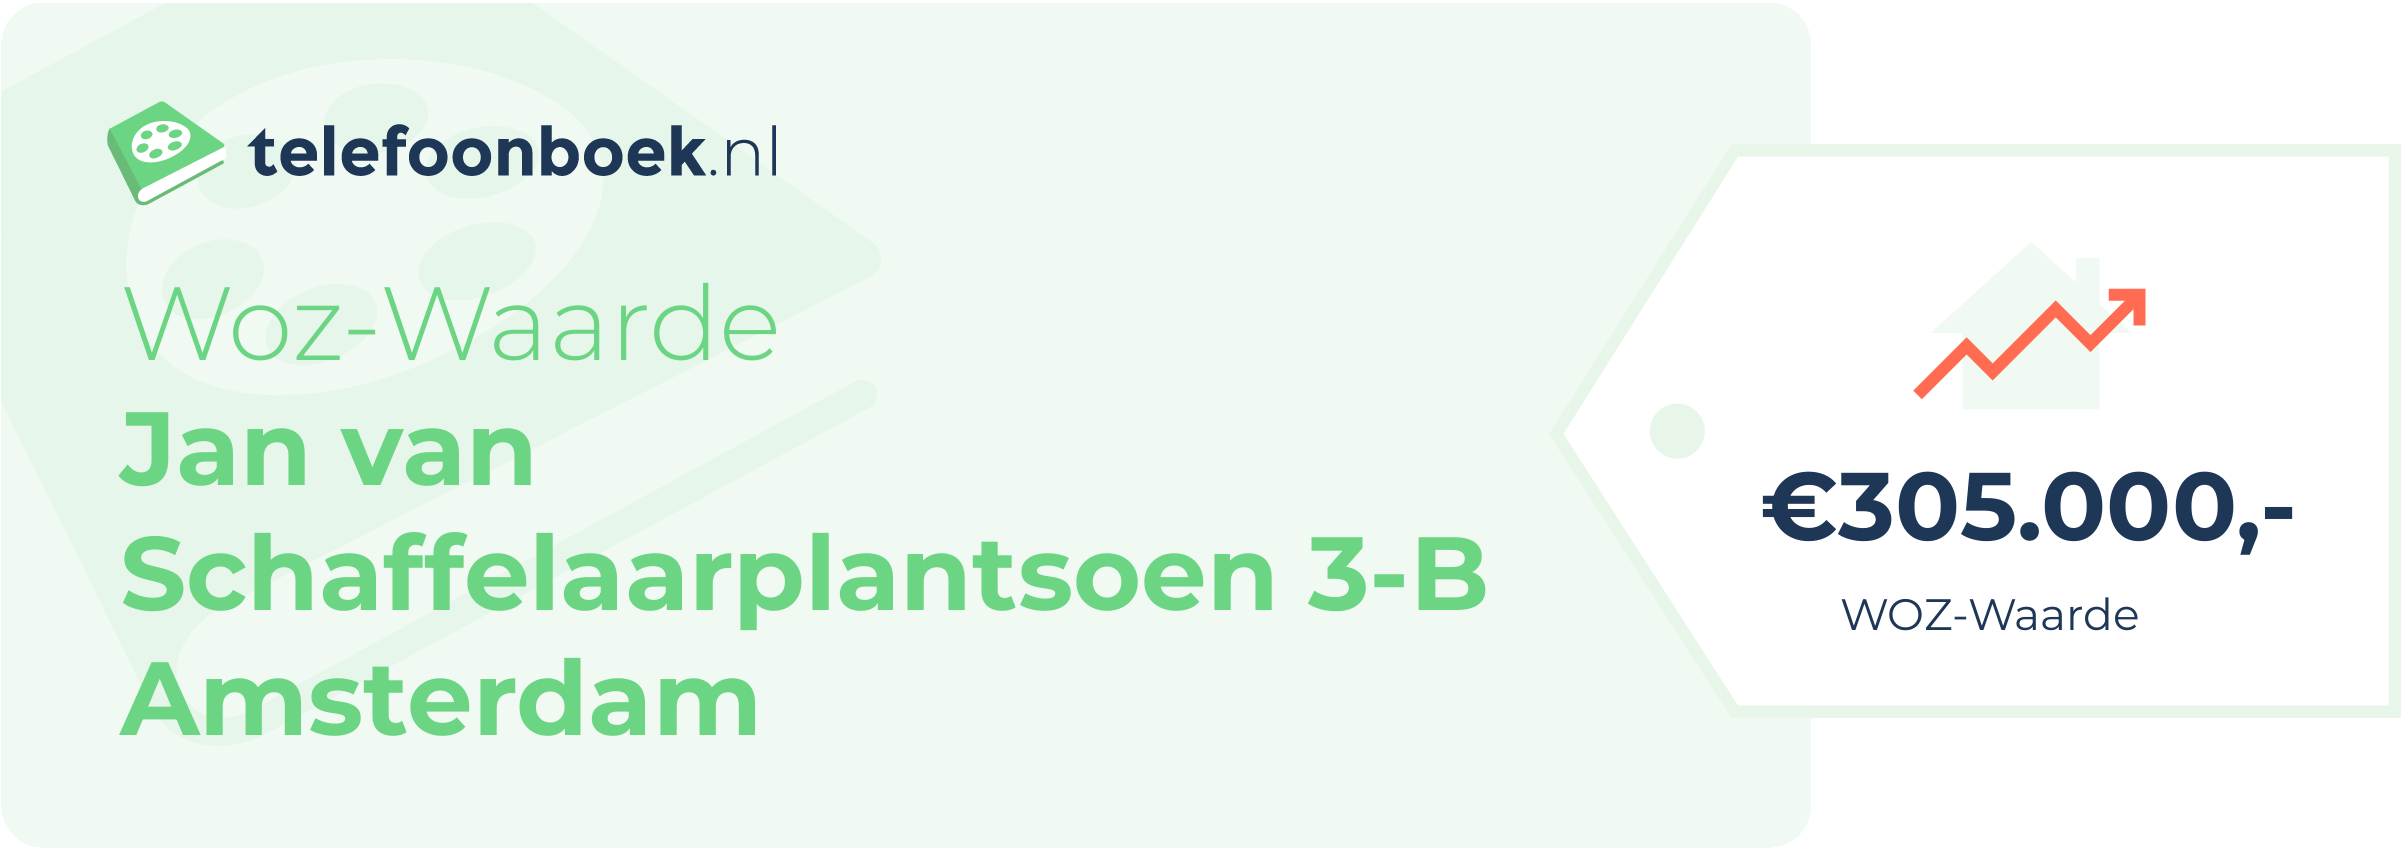 WOZ-waarde Jan Van Schaffelaarplantsoen 3-B Amsterdam